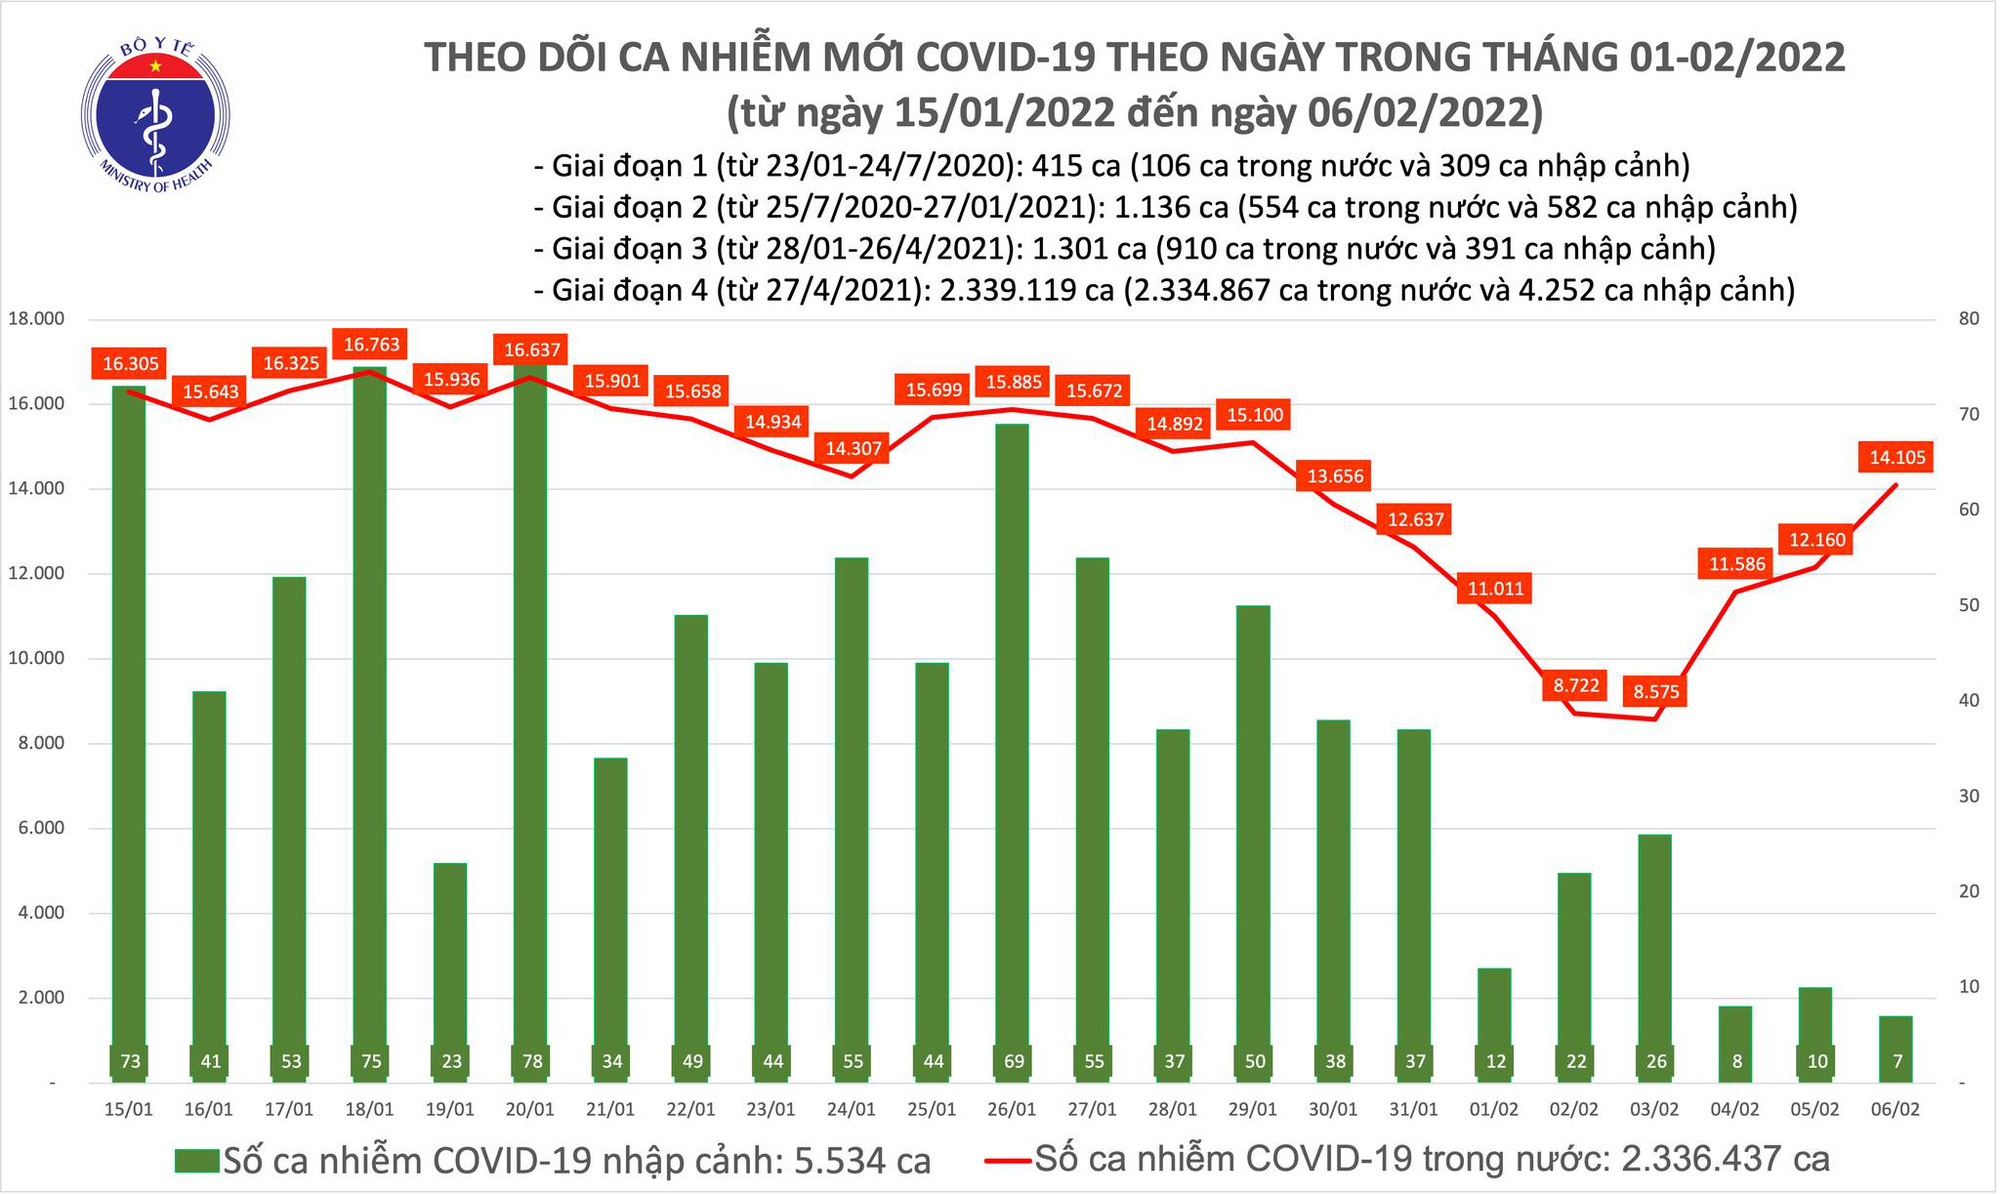 Ngày 6/2: Có 14.112 ca COVID-19; 63 ca tử vong, thấp nhất trong vài tháng qua - Ảnh 1.